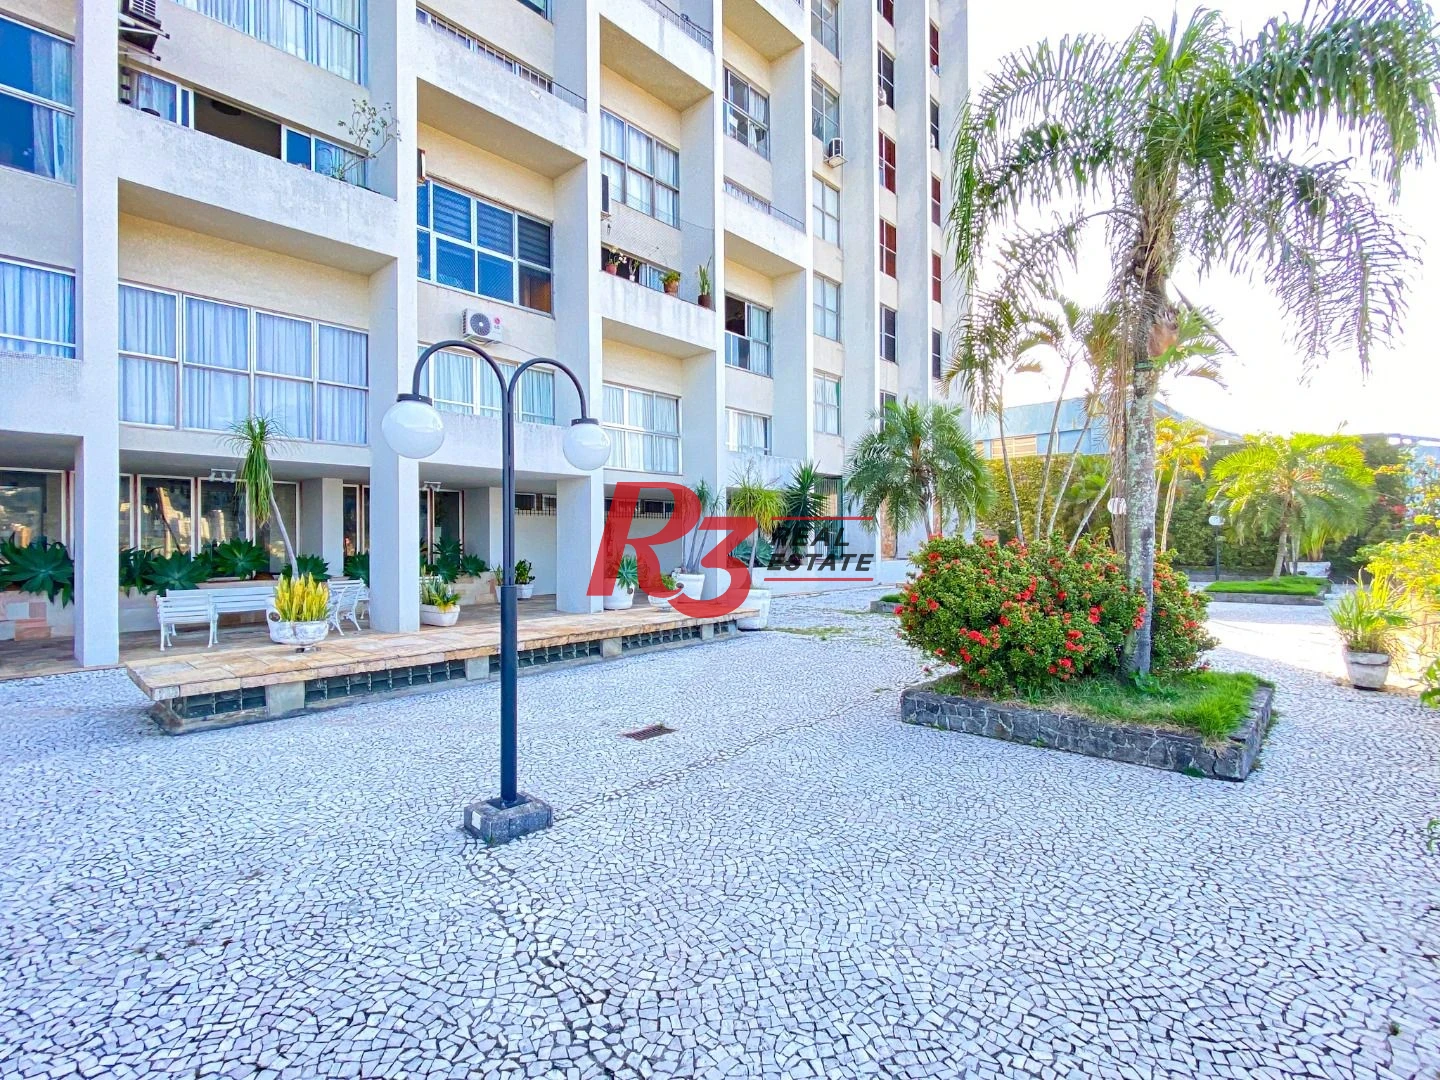 Maravilhoso Apartamento a venda com aproximadamente 225 m² | 3 dorms | 1 suíte | 2 vagas - São Vicente/SP